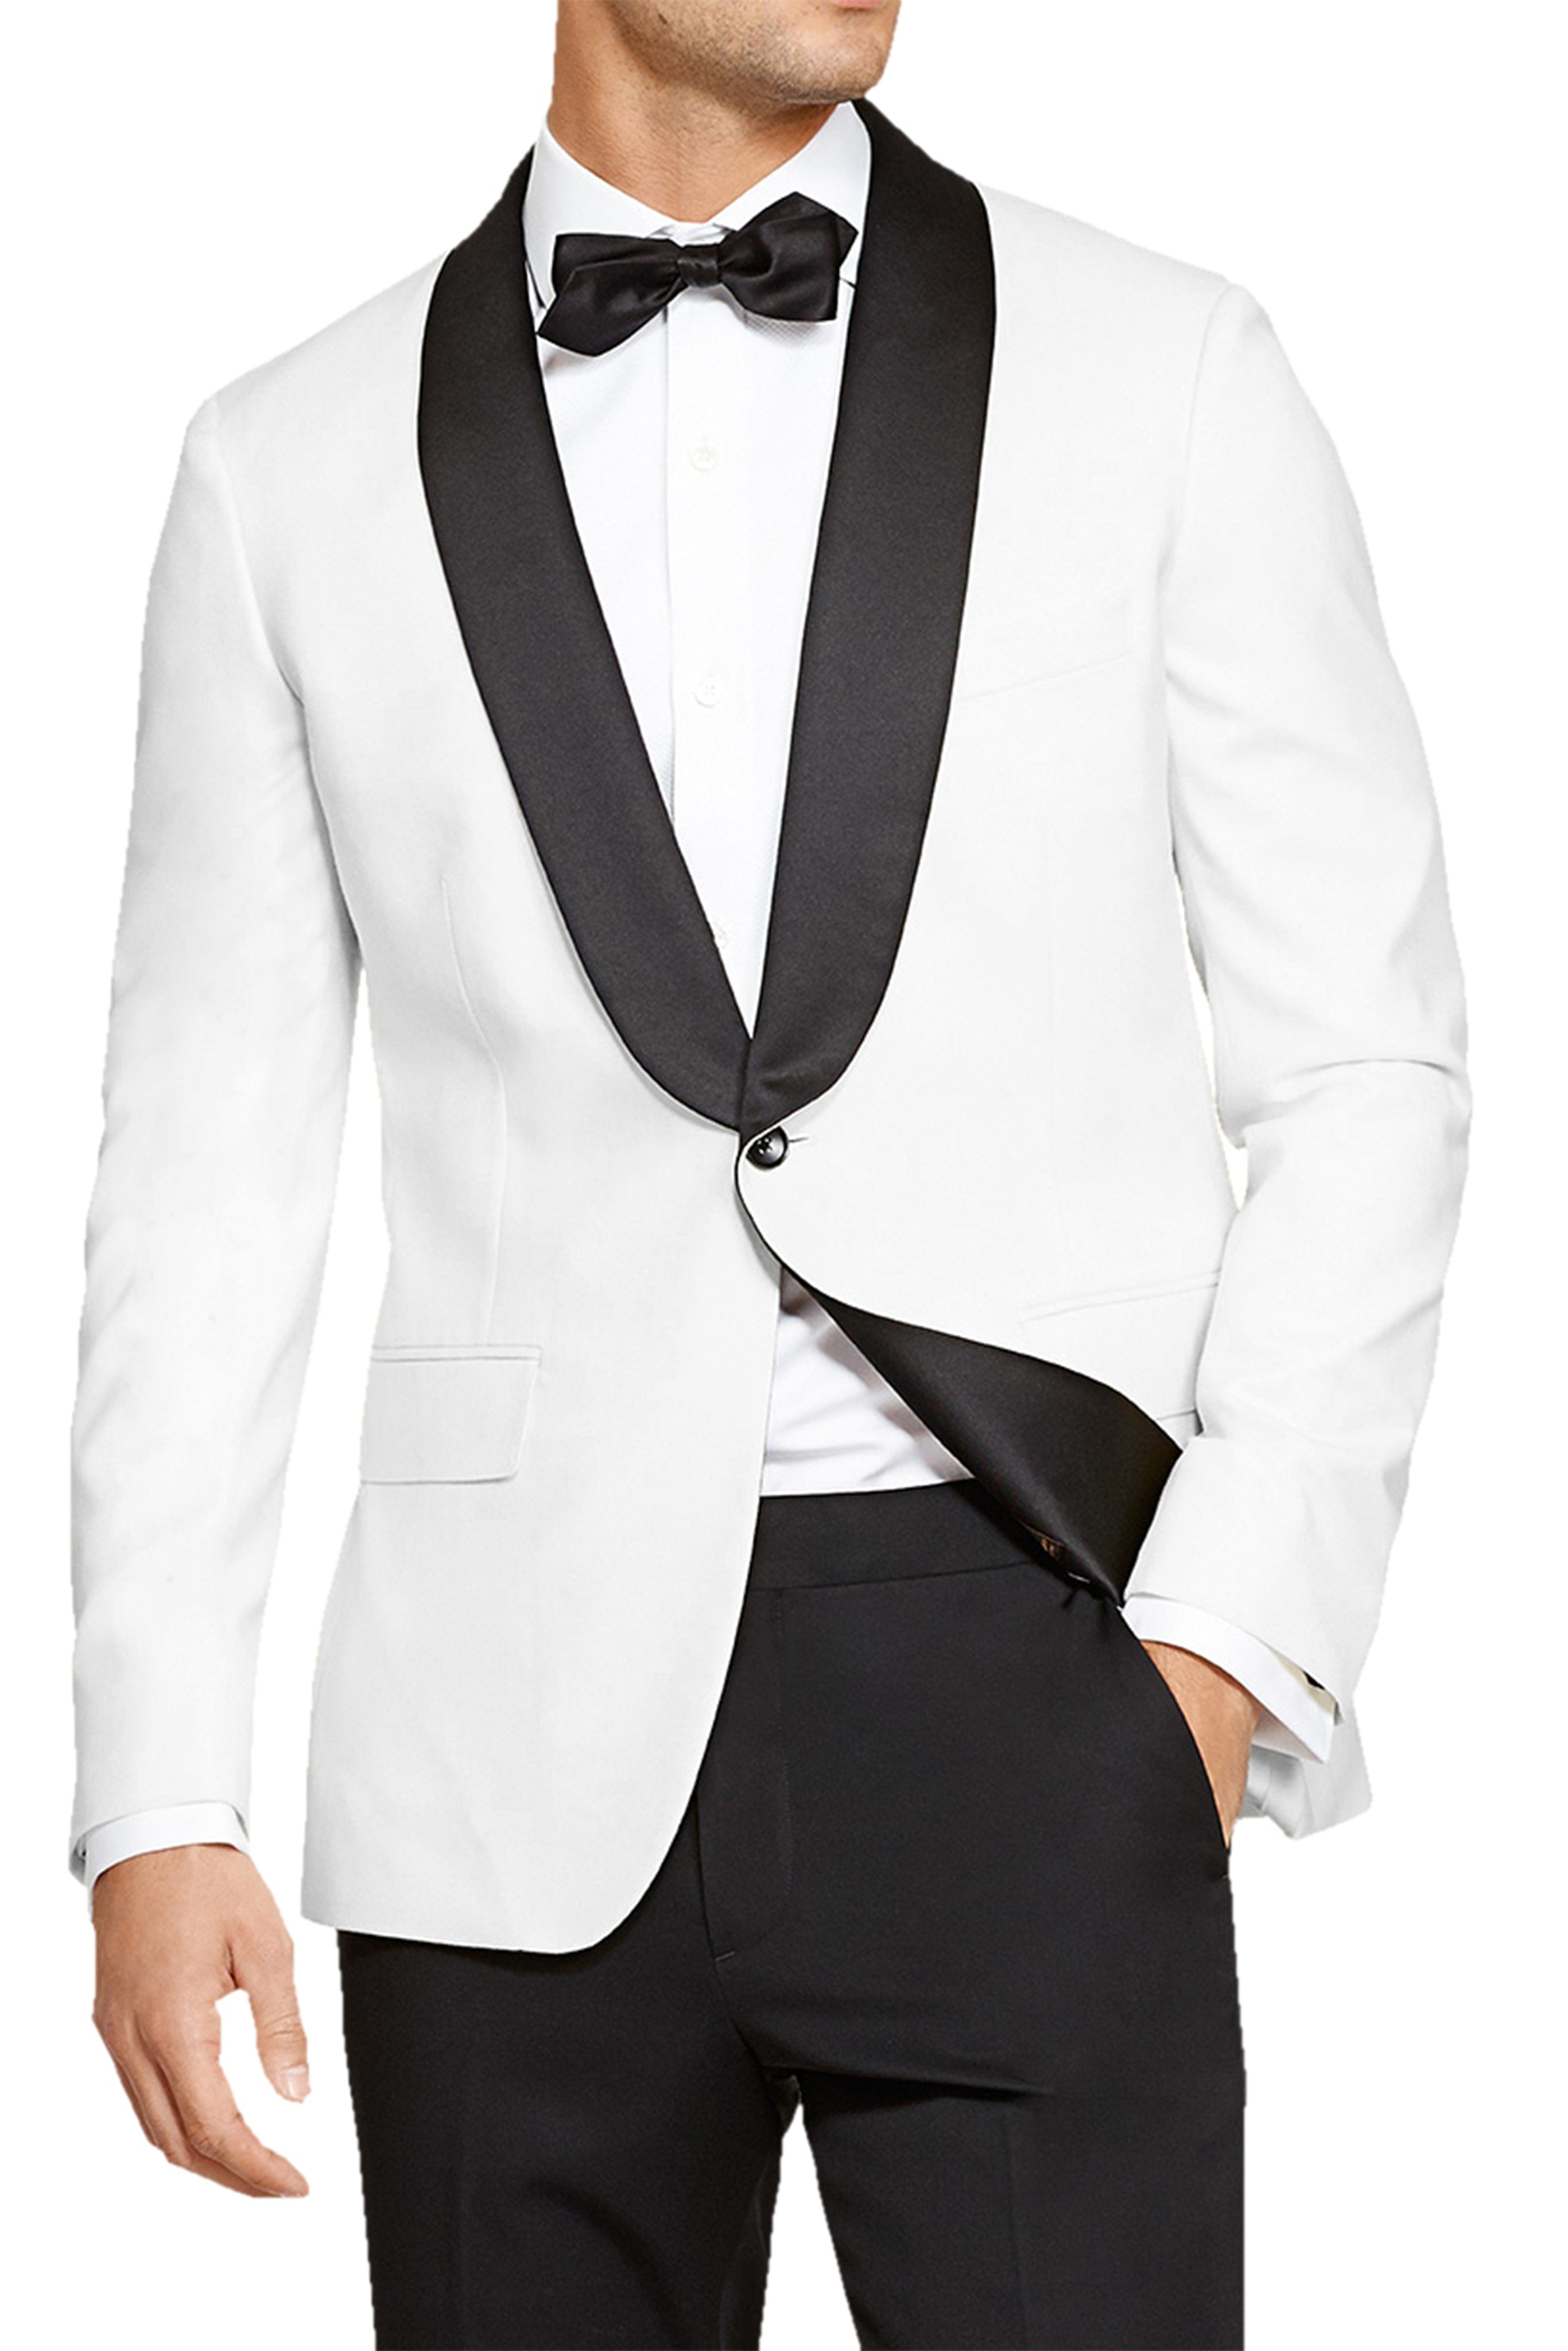 aesido 2 Pieces Fashion Shawl Lapel Men's Suit（Blazer+Pants）